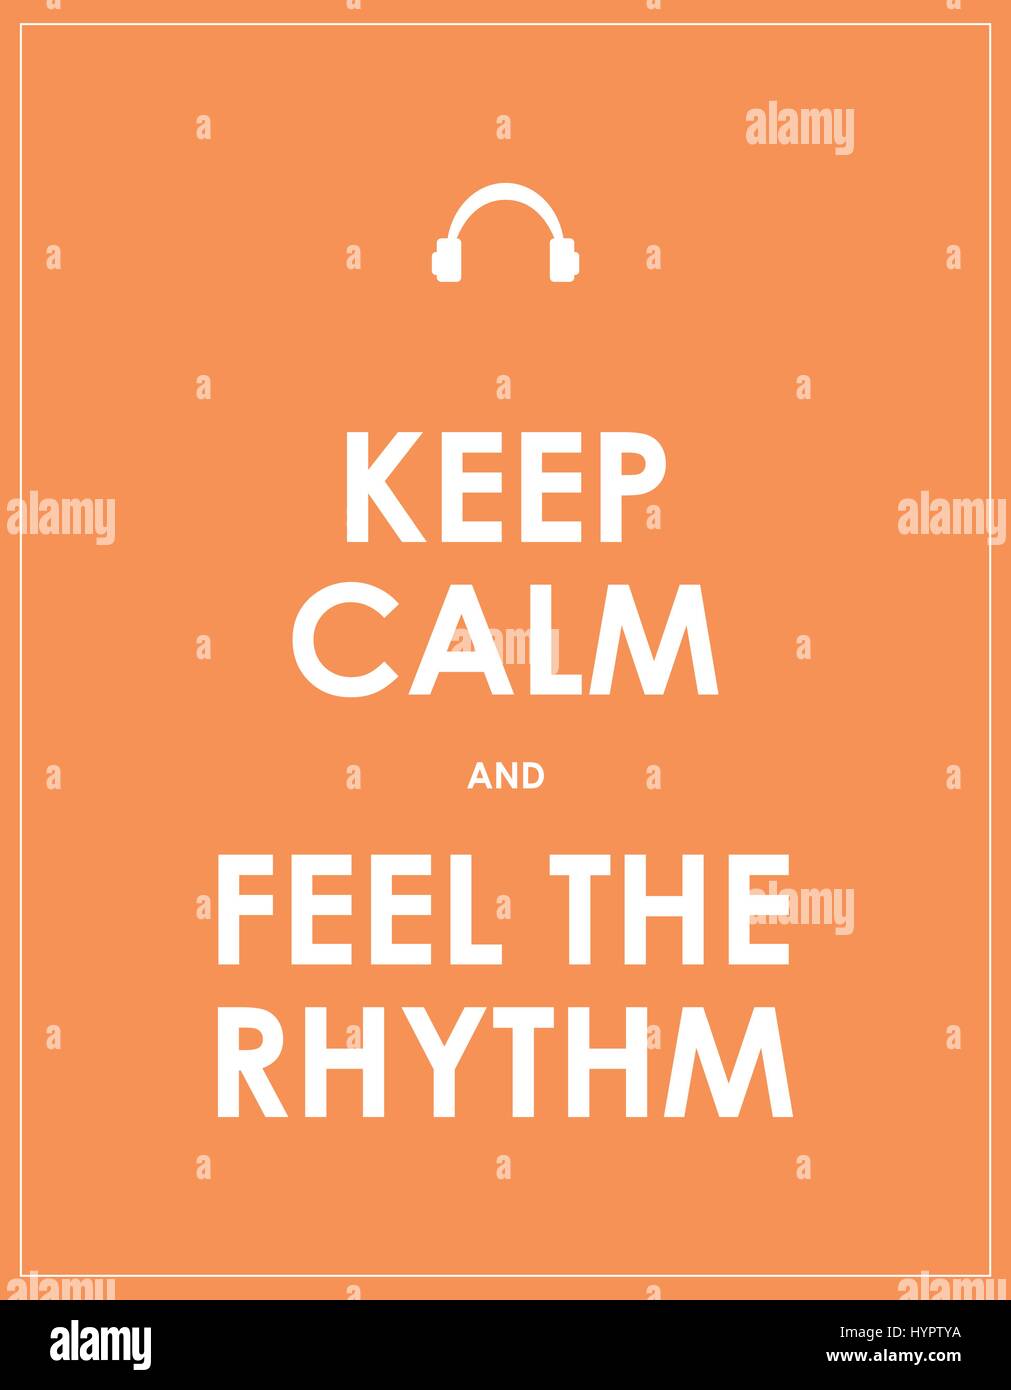 keep calm and feel the rhythm banner Stock Vector